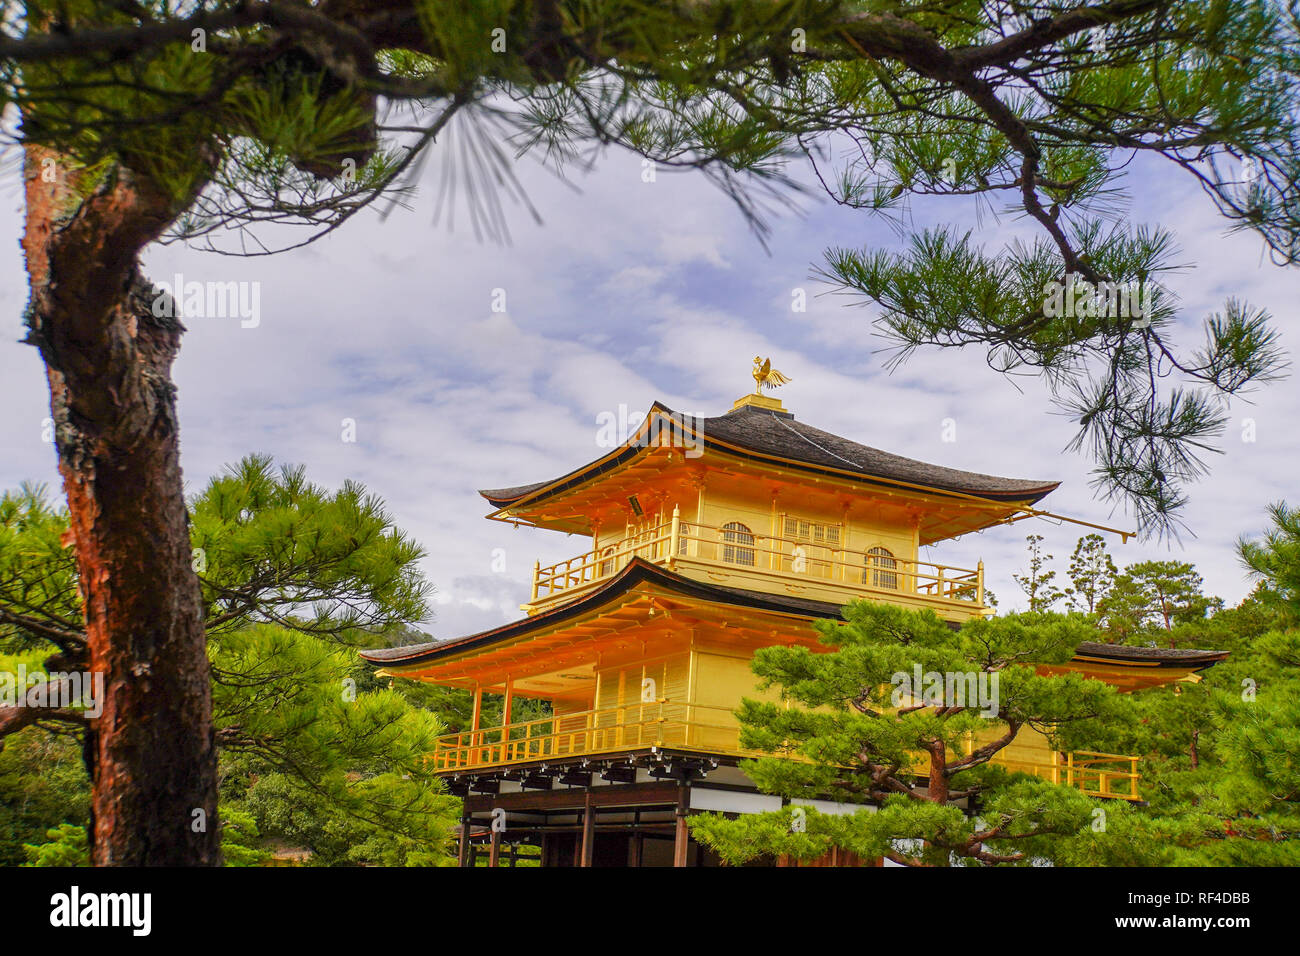 Giappone, Kyoto, Zen tempio Buddista Kinkaku-ji (Tempio del Padiglione Dorato), Aka Rokuon-ji (cervo giardino tempio) Foto Stock